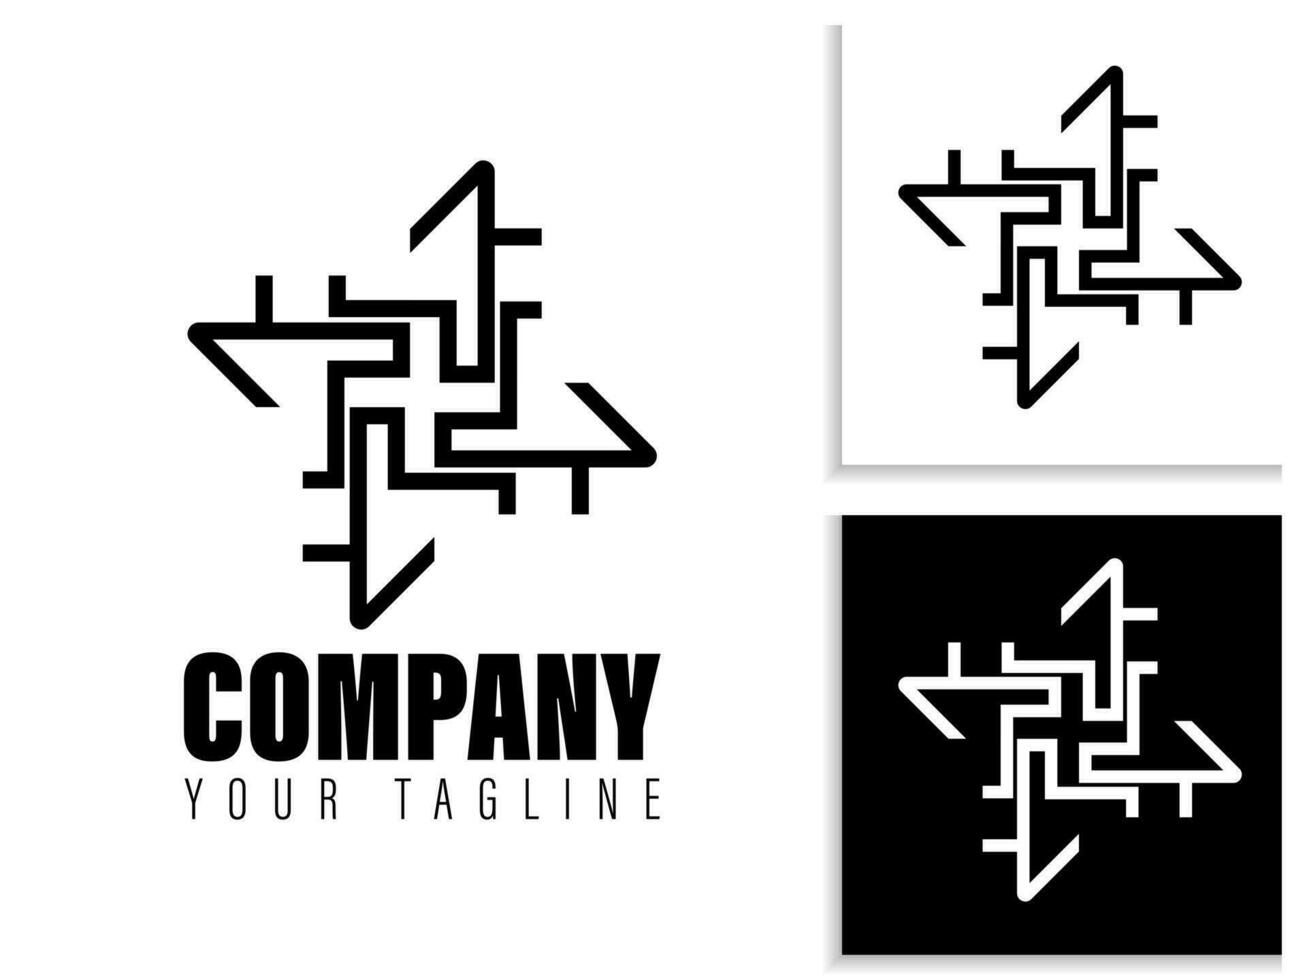 gemakkelijk meetkundig logo ontwerp in zwart en wit vector